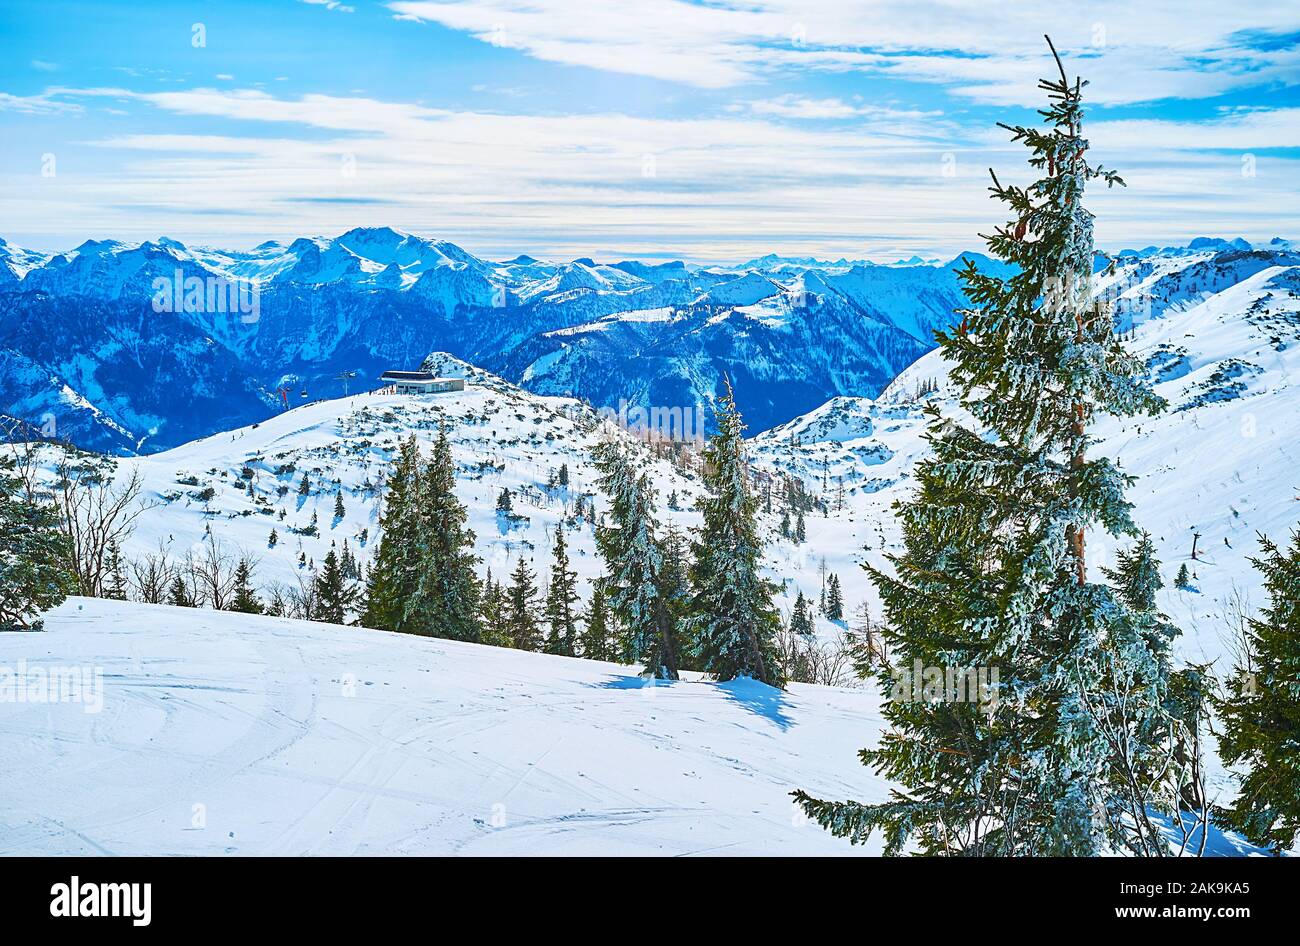 Die verschneite Landschaft mit hohen Bäumen Fichte, der oberen Station der Seilbahn und felsigen scharfe Berge der Nördlichen Kalkalpen auf dem Hintergrund, Feuerko Stockfoto